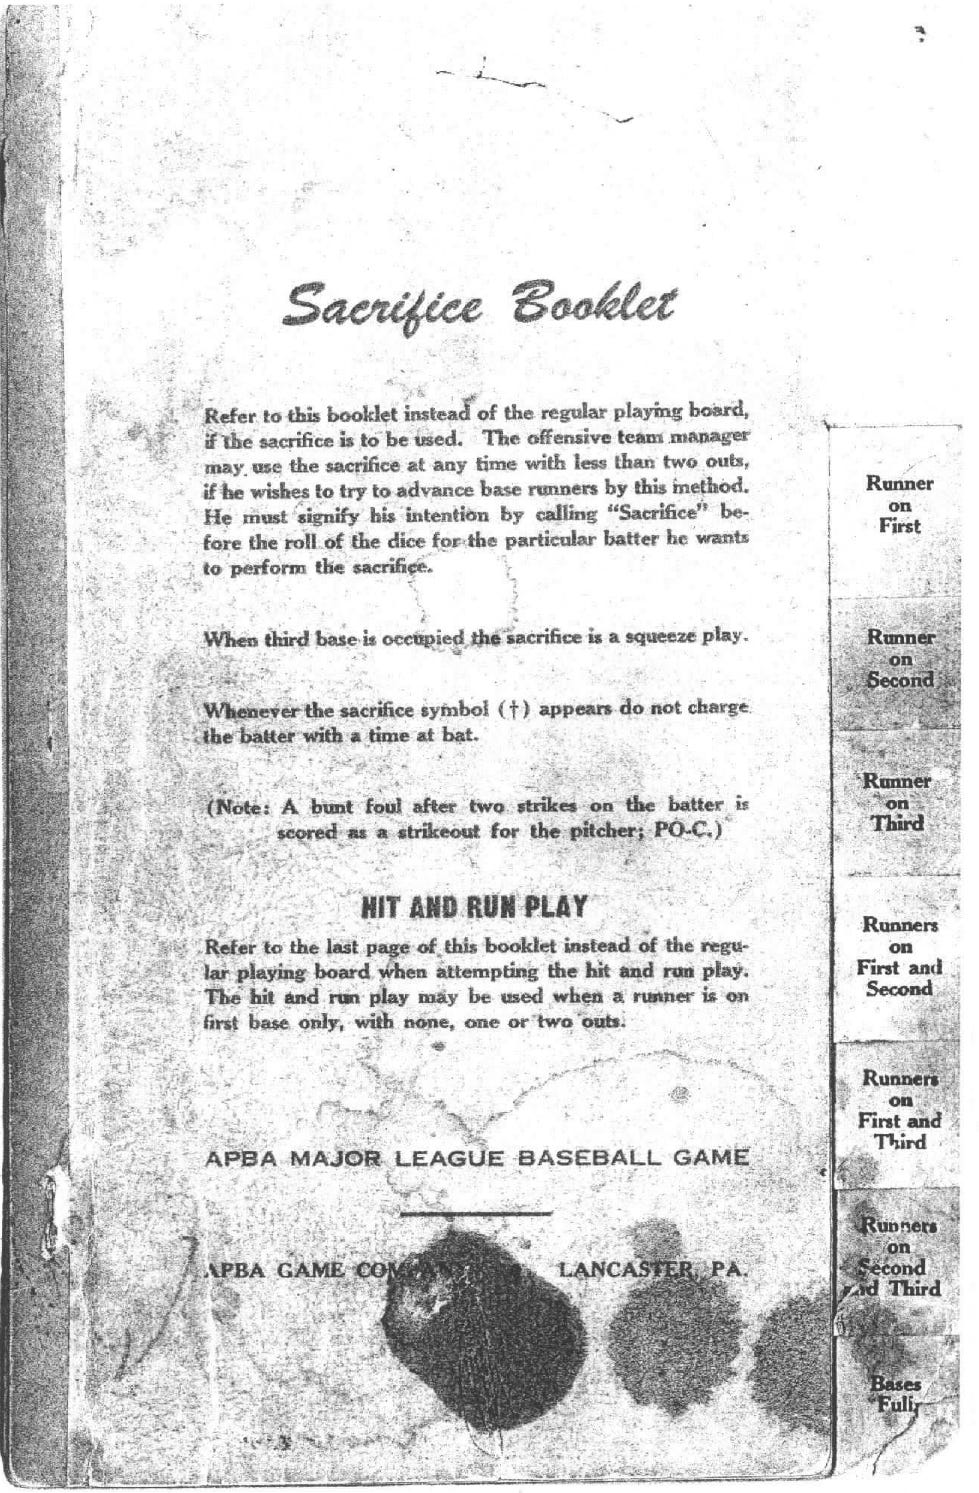 1952 APBA Sacrifice Booklet